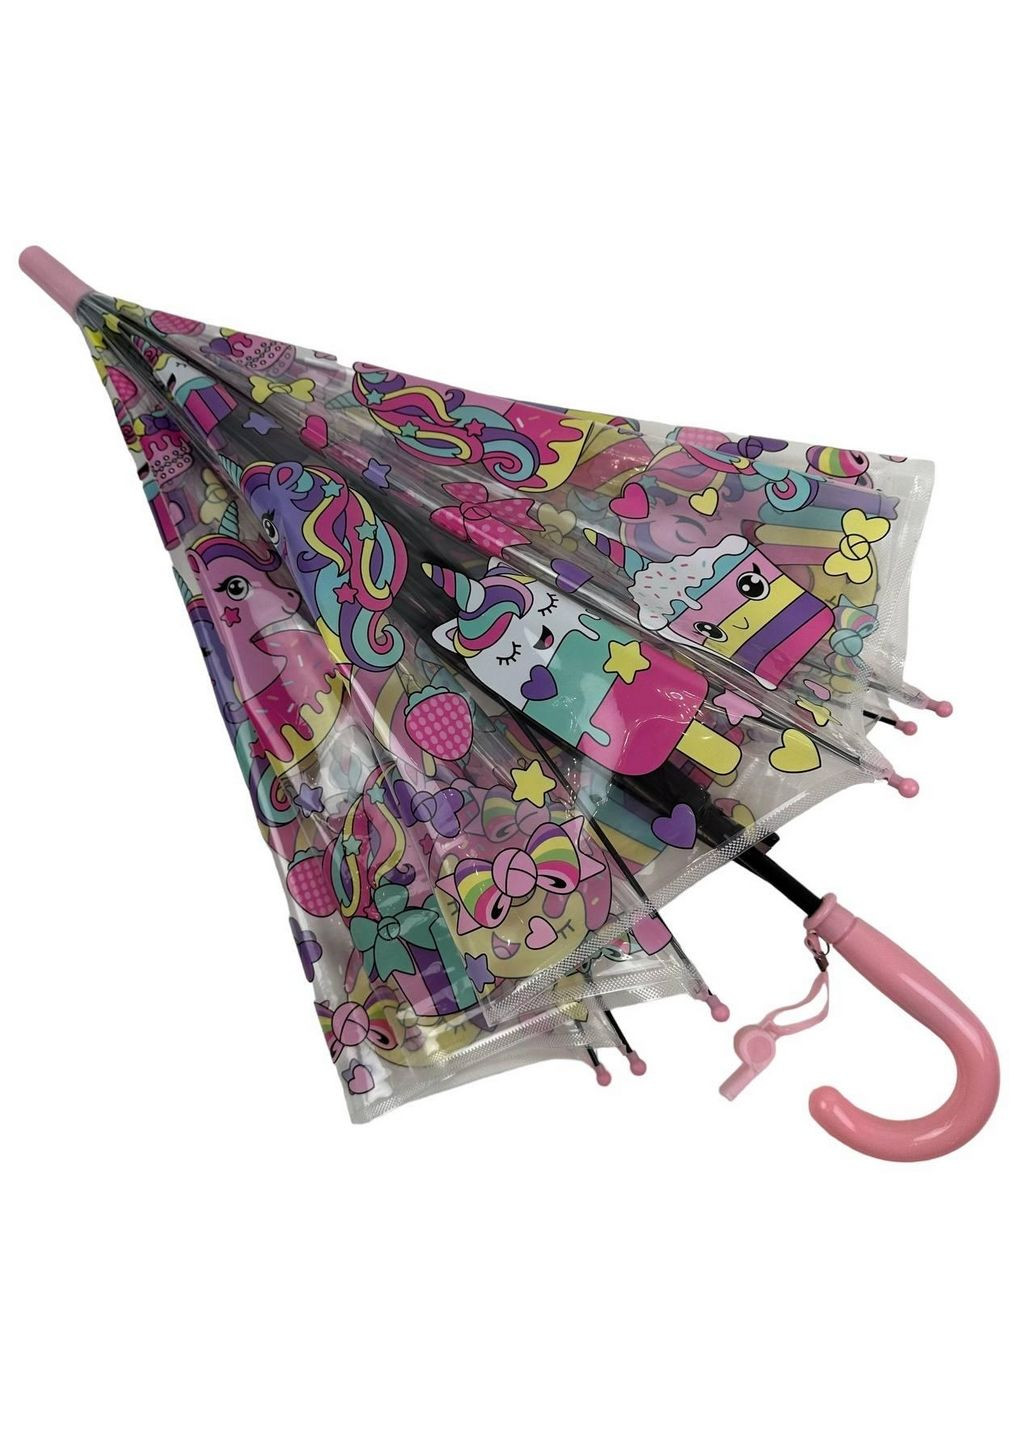 Прозрачный детский зонт трость полуавтомат Fiaba (279316139)